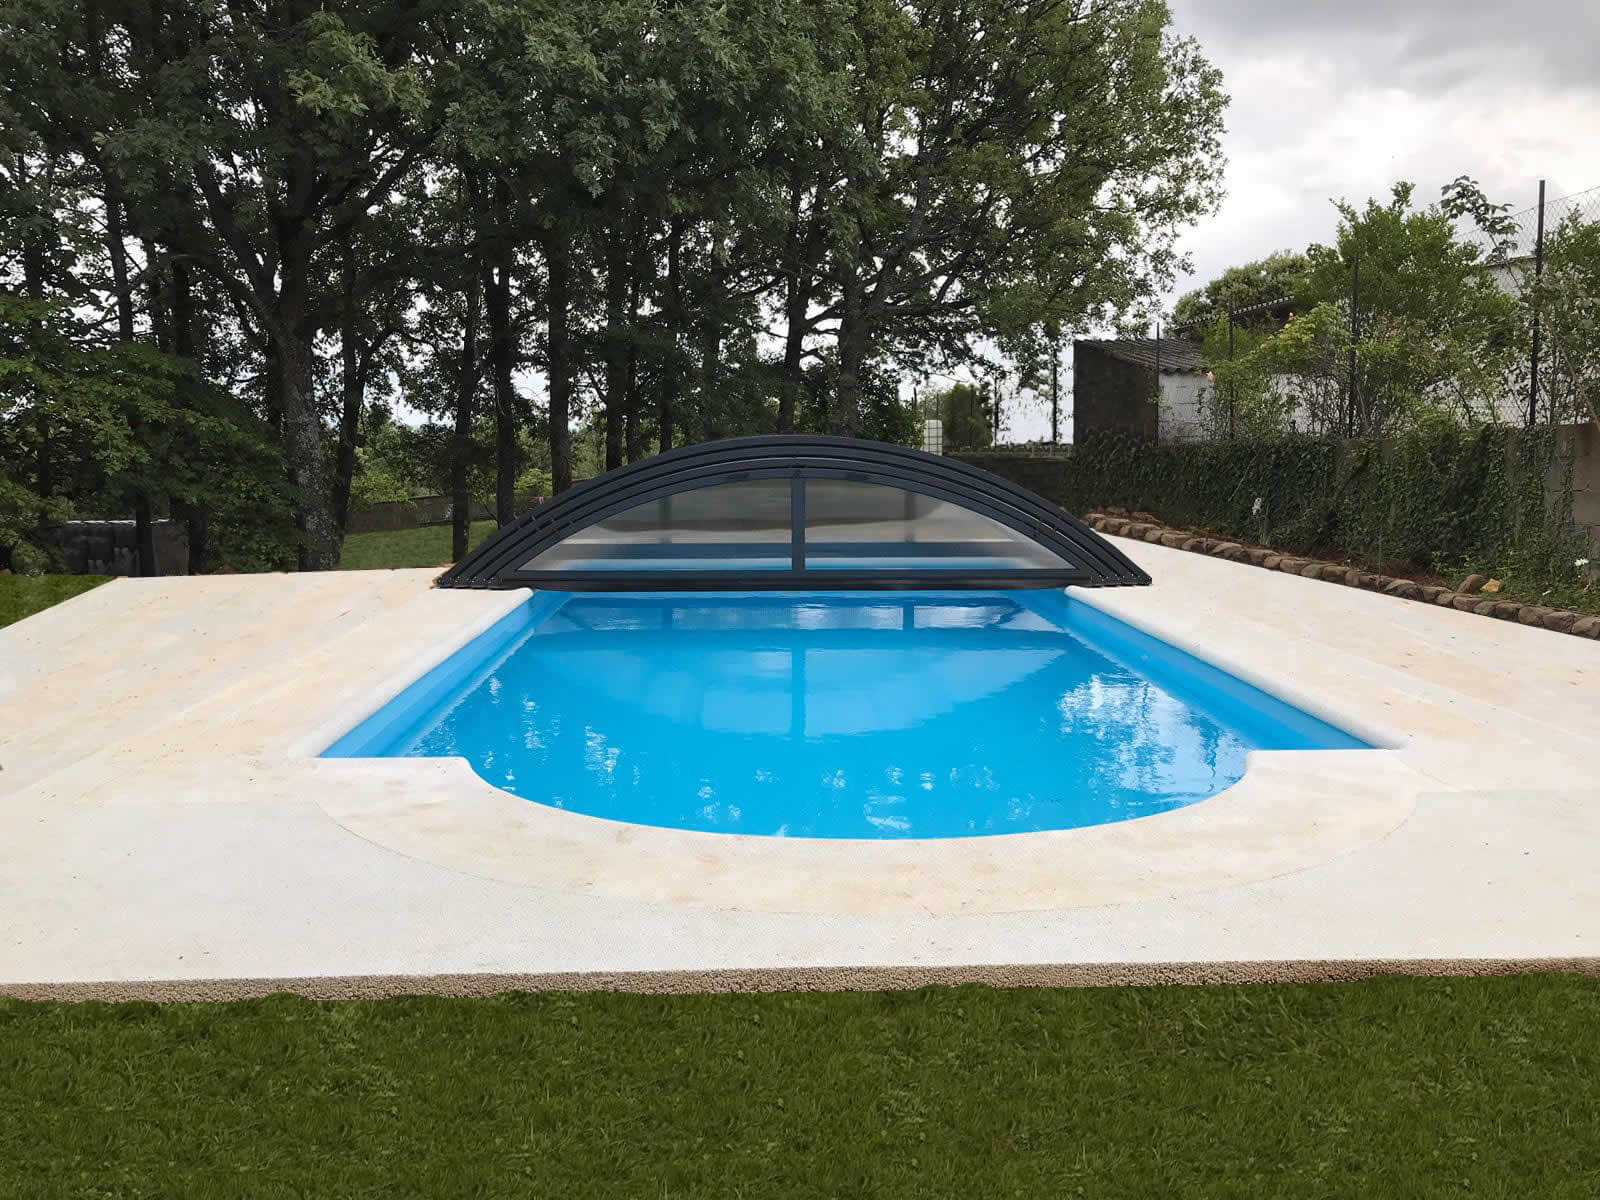 Cubierta Teide: Cerramiento bajo y telescópico para piscina en León